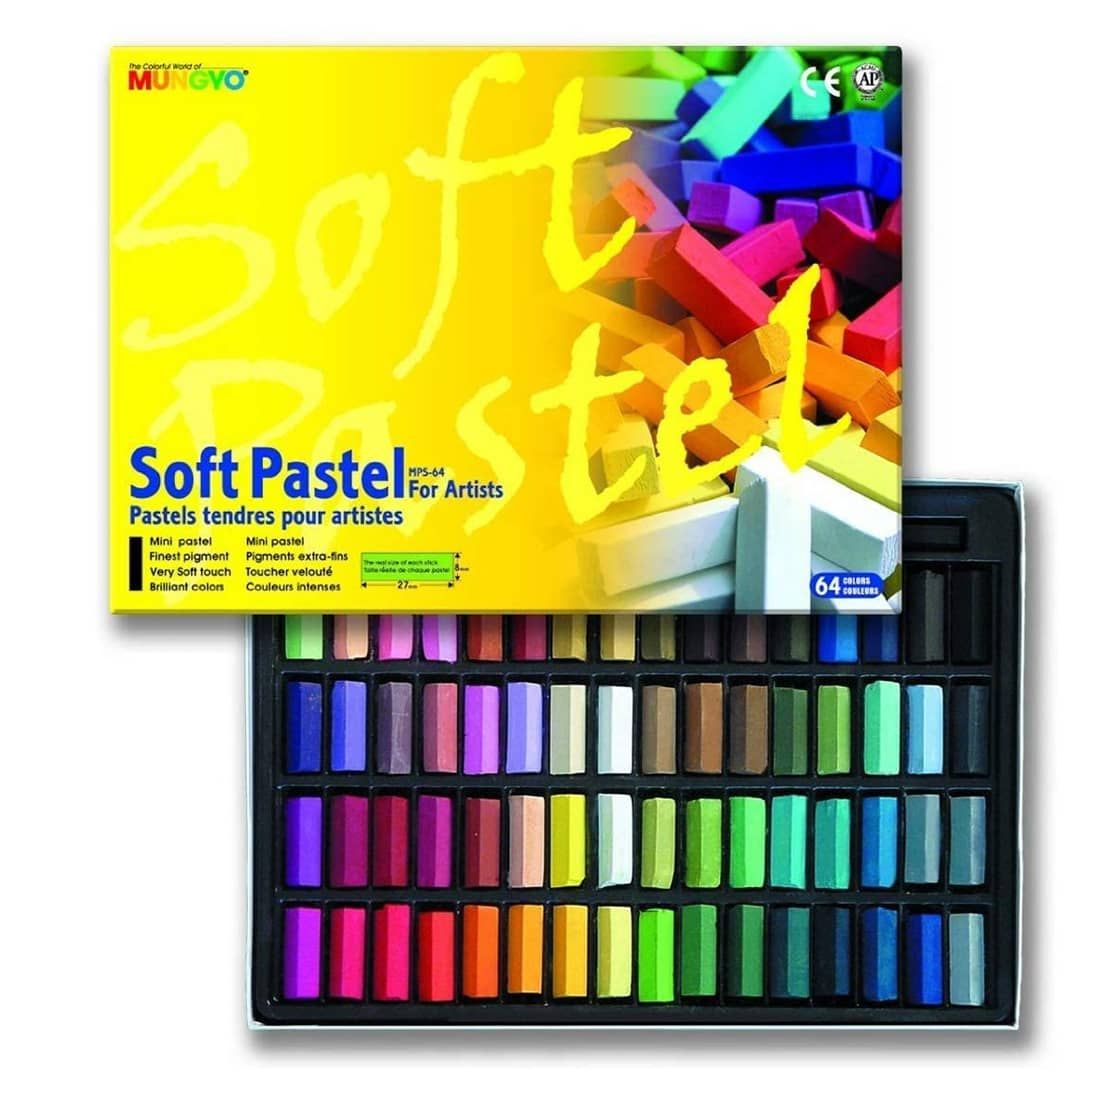 Pro Art Artists' Color Chalk Pastel Set (Brilliant Colors), 24 Pieces, NEW!